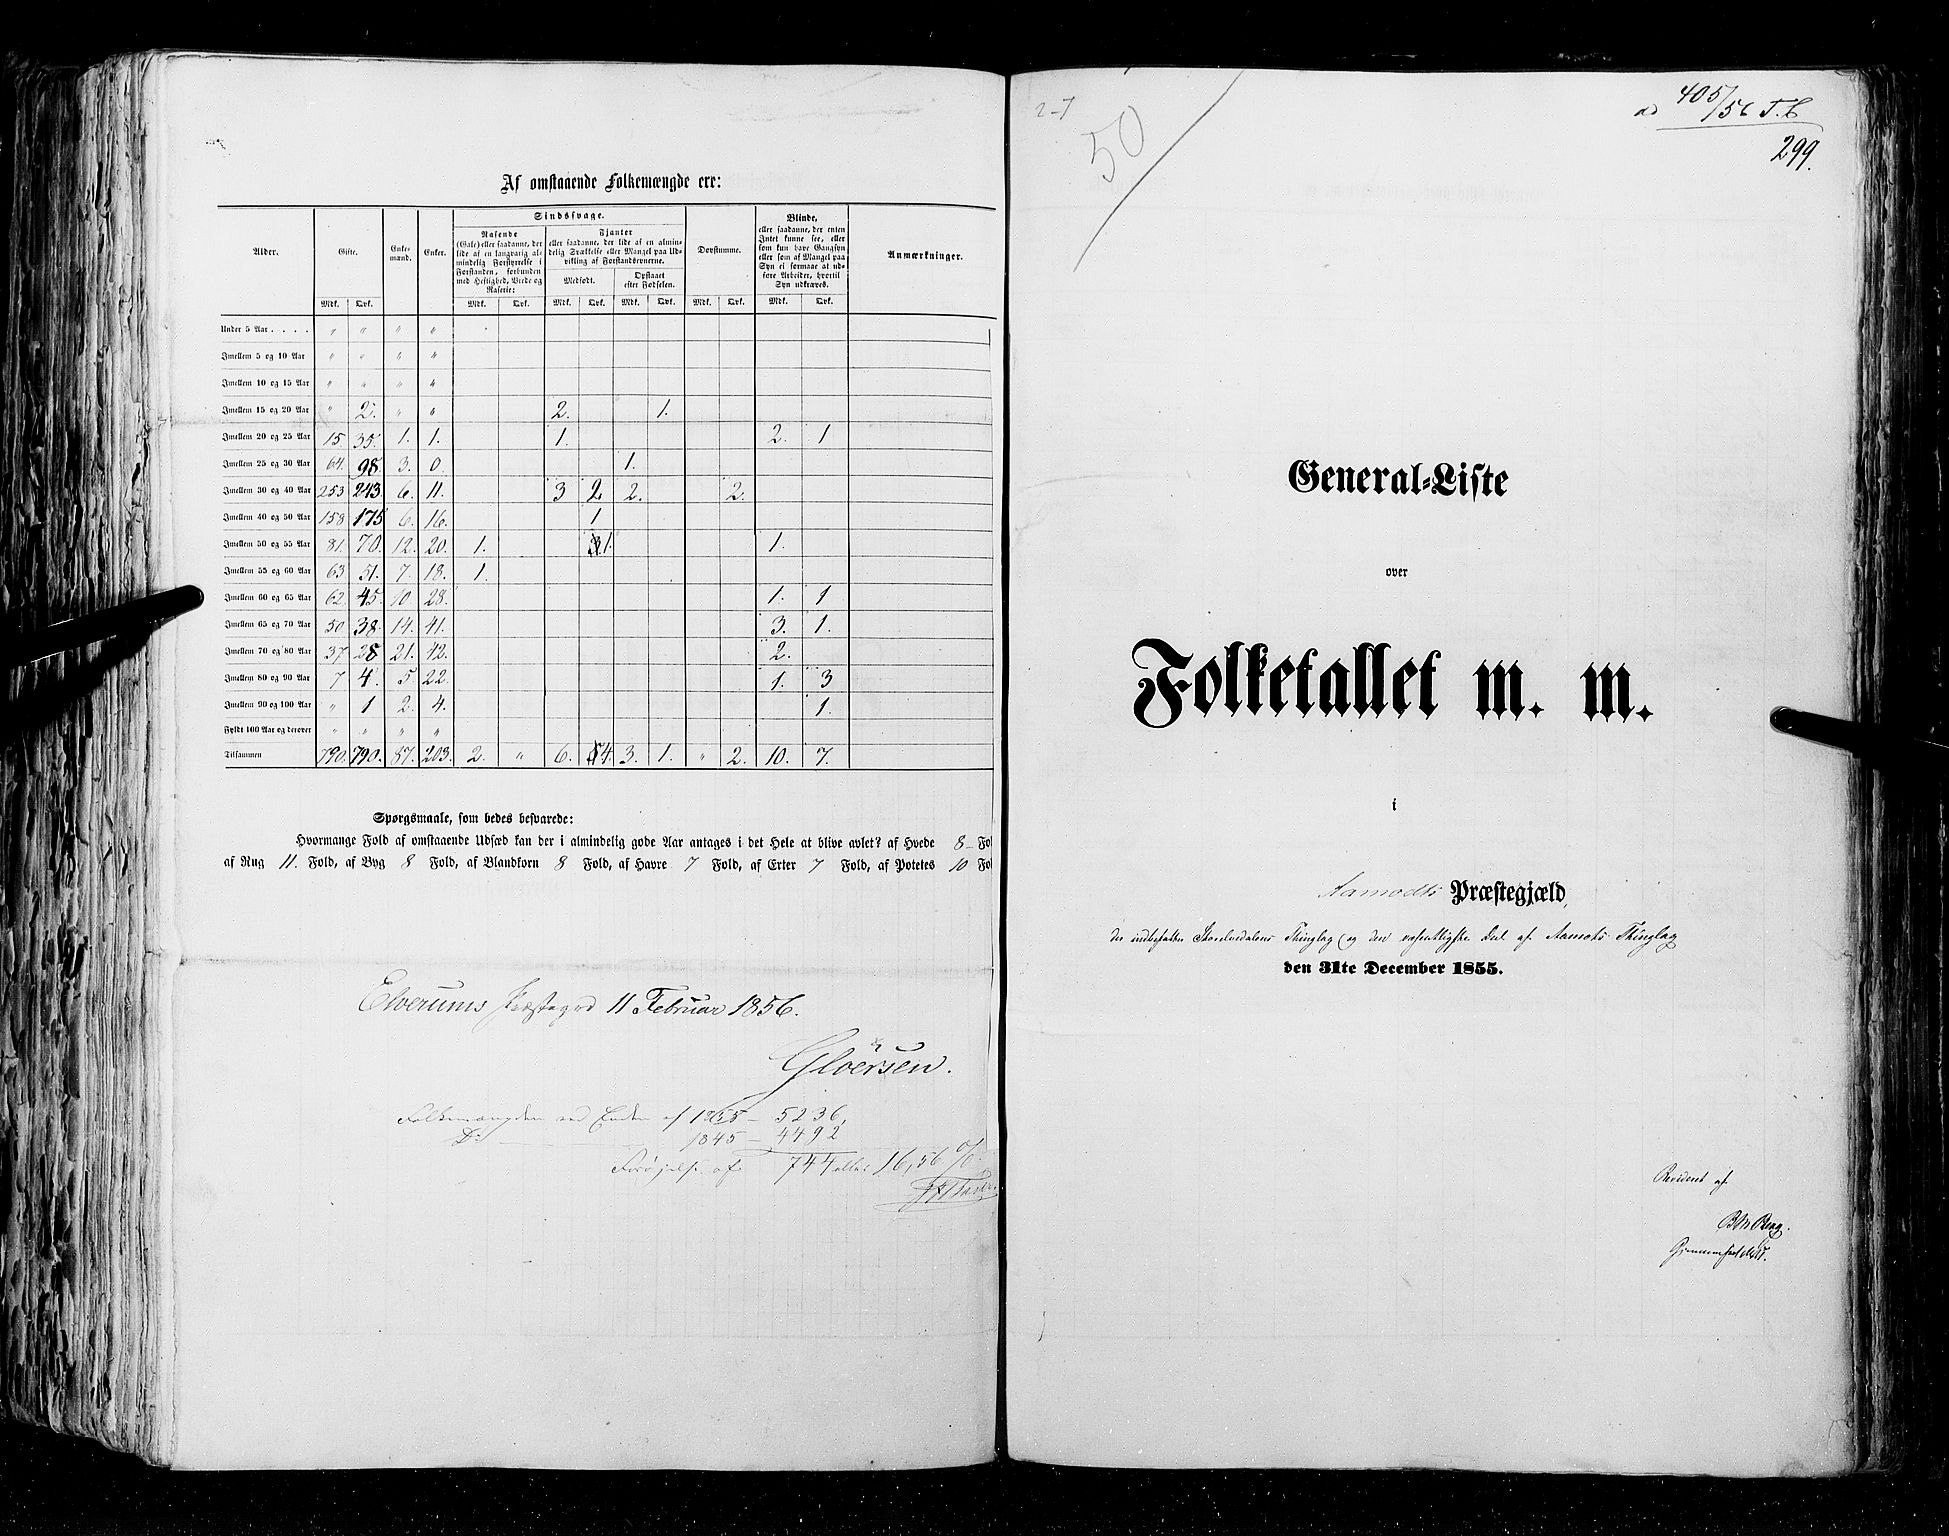 RA, Folketellingen 1855, bind 1: Akershus amt, Smålenenes amt og Hedemarken amt, 1855, s. 299